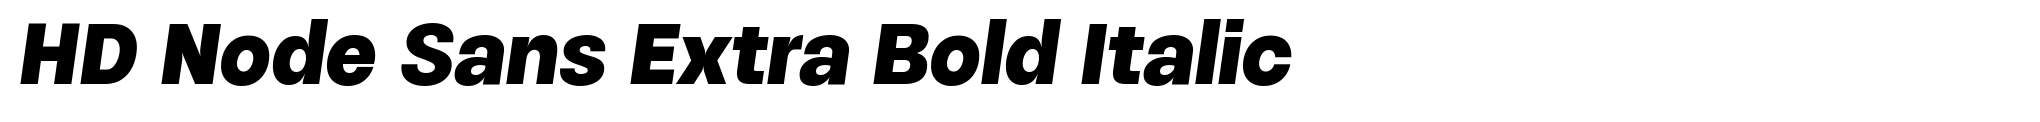 HD Node Sans Extra Bold Italic image